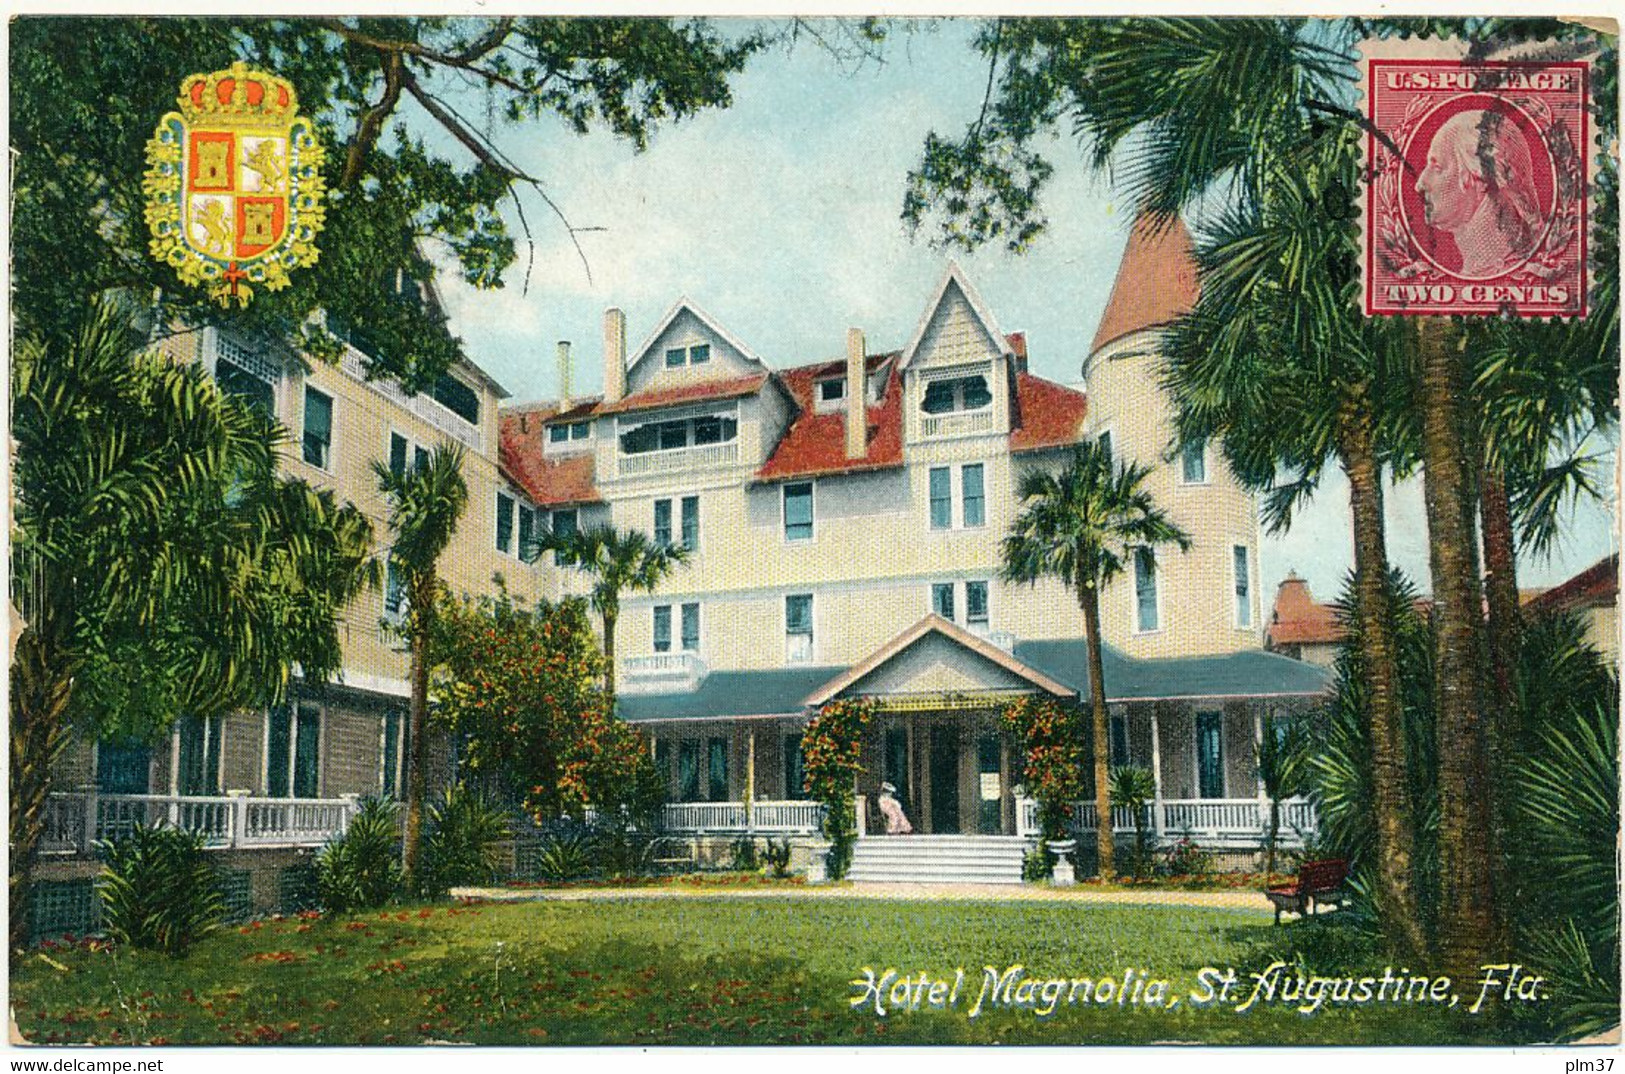 St AUGUSTINE, FL - Hotel Magnolia - St Augustine